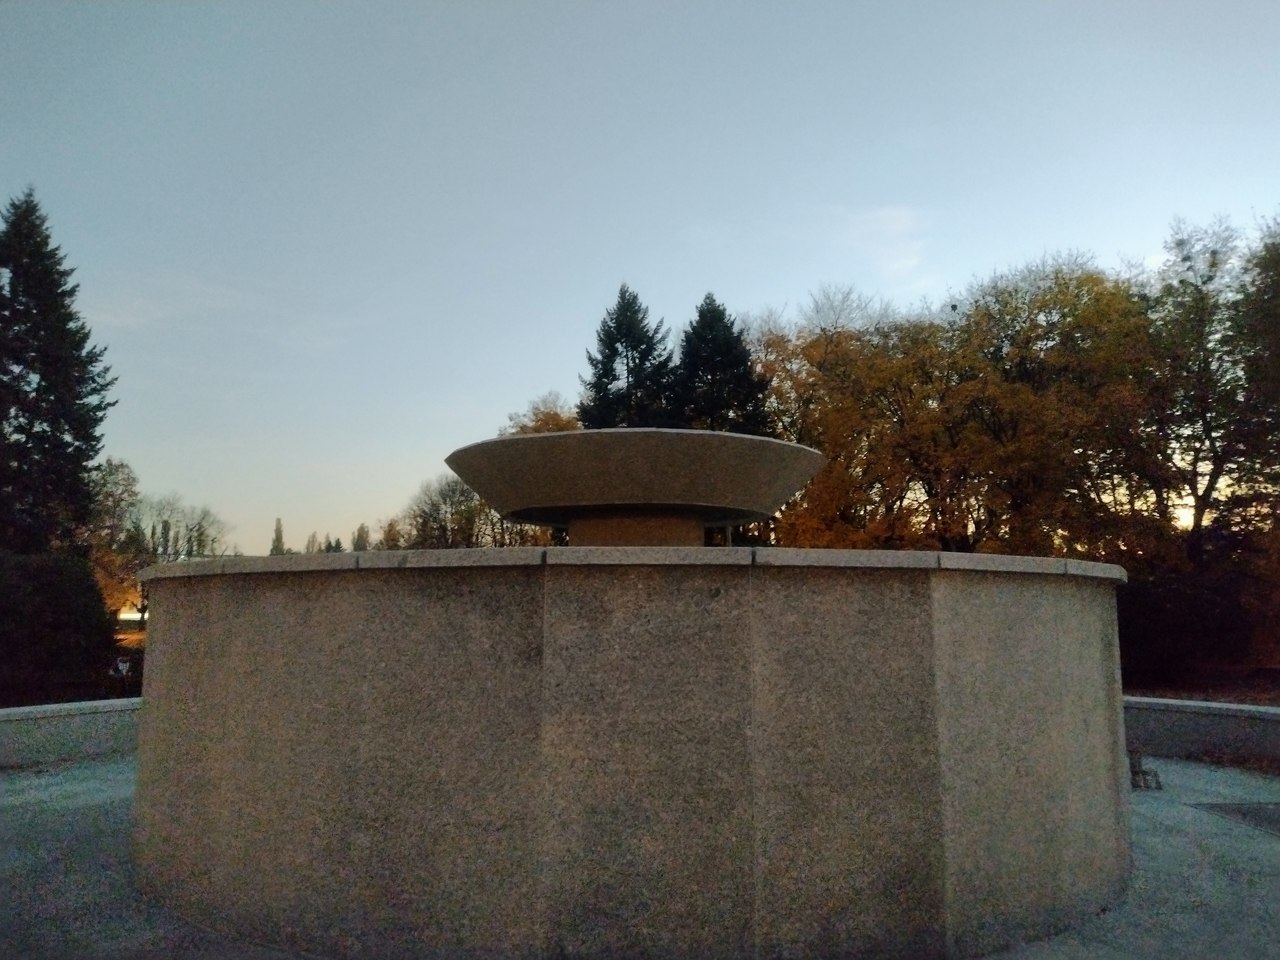 Nowa fontanna w parku Widzewskim. „Łódź kocha beton” - twierdzą mieszkańcy [zdjęcia] - Zdjęcie główne